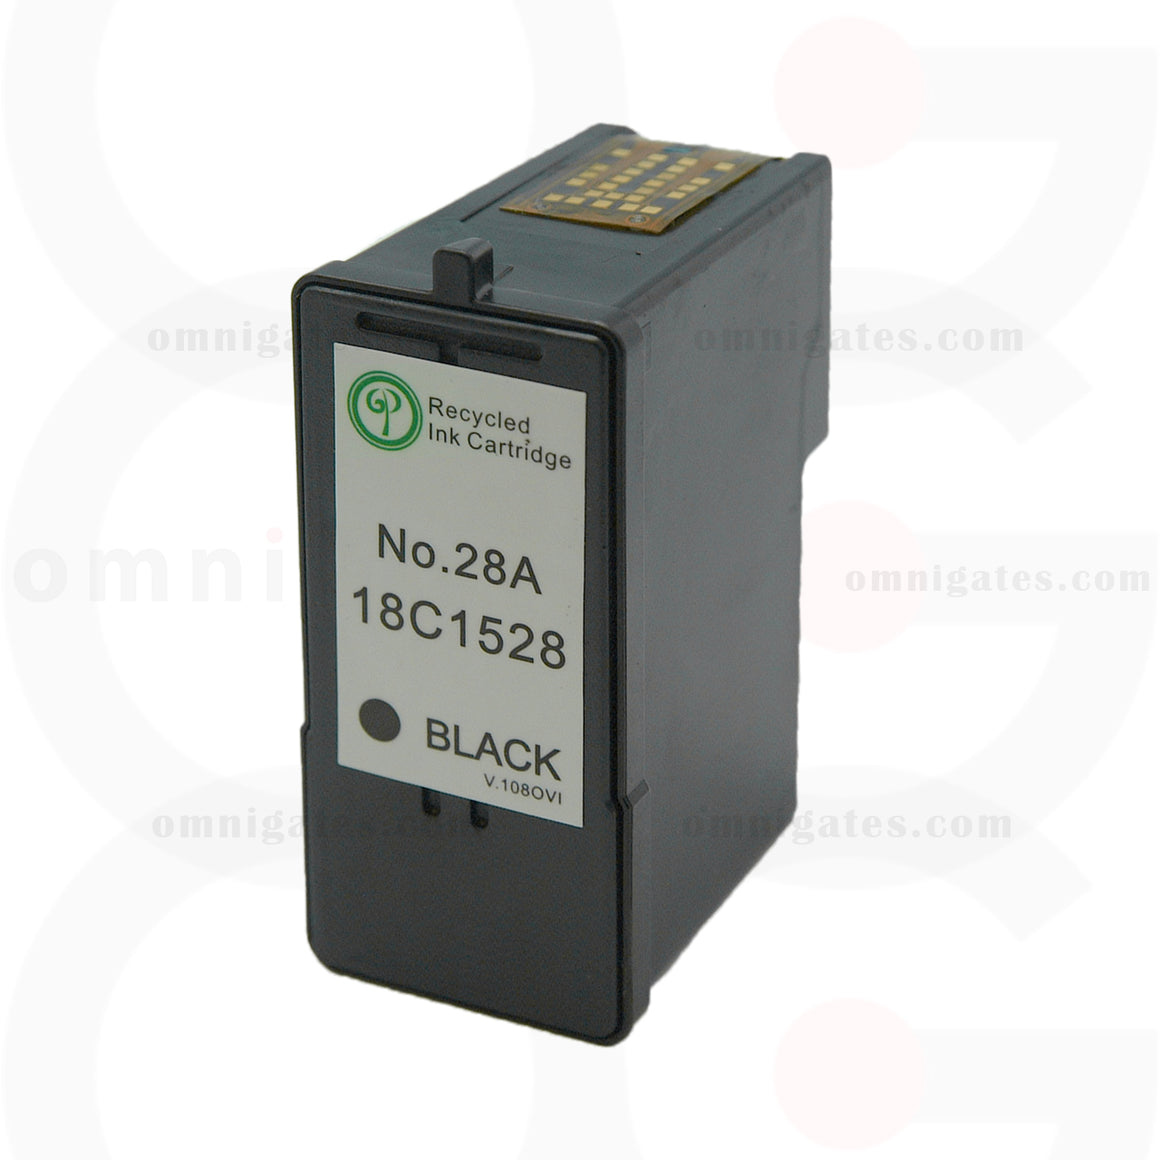 Black OGP Remanufactured Lexmark 18C1528 Inkjet Cartridge